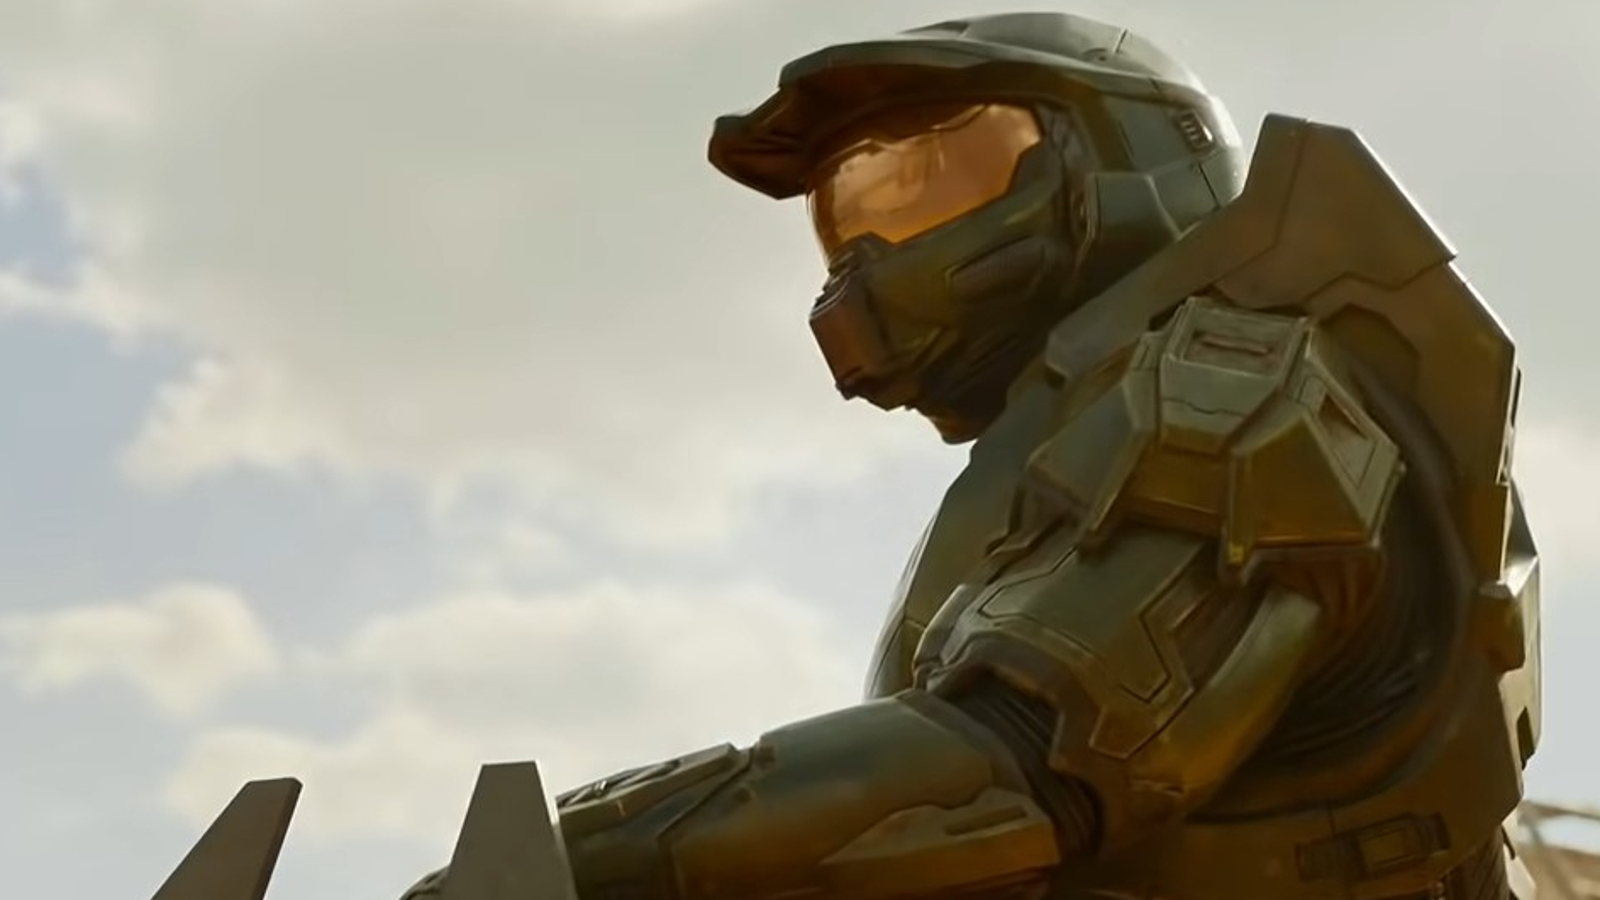 Série TV de Halo estreia hoje, mas não há forma de ver legalmente